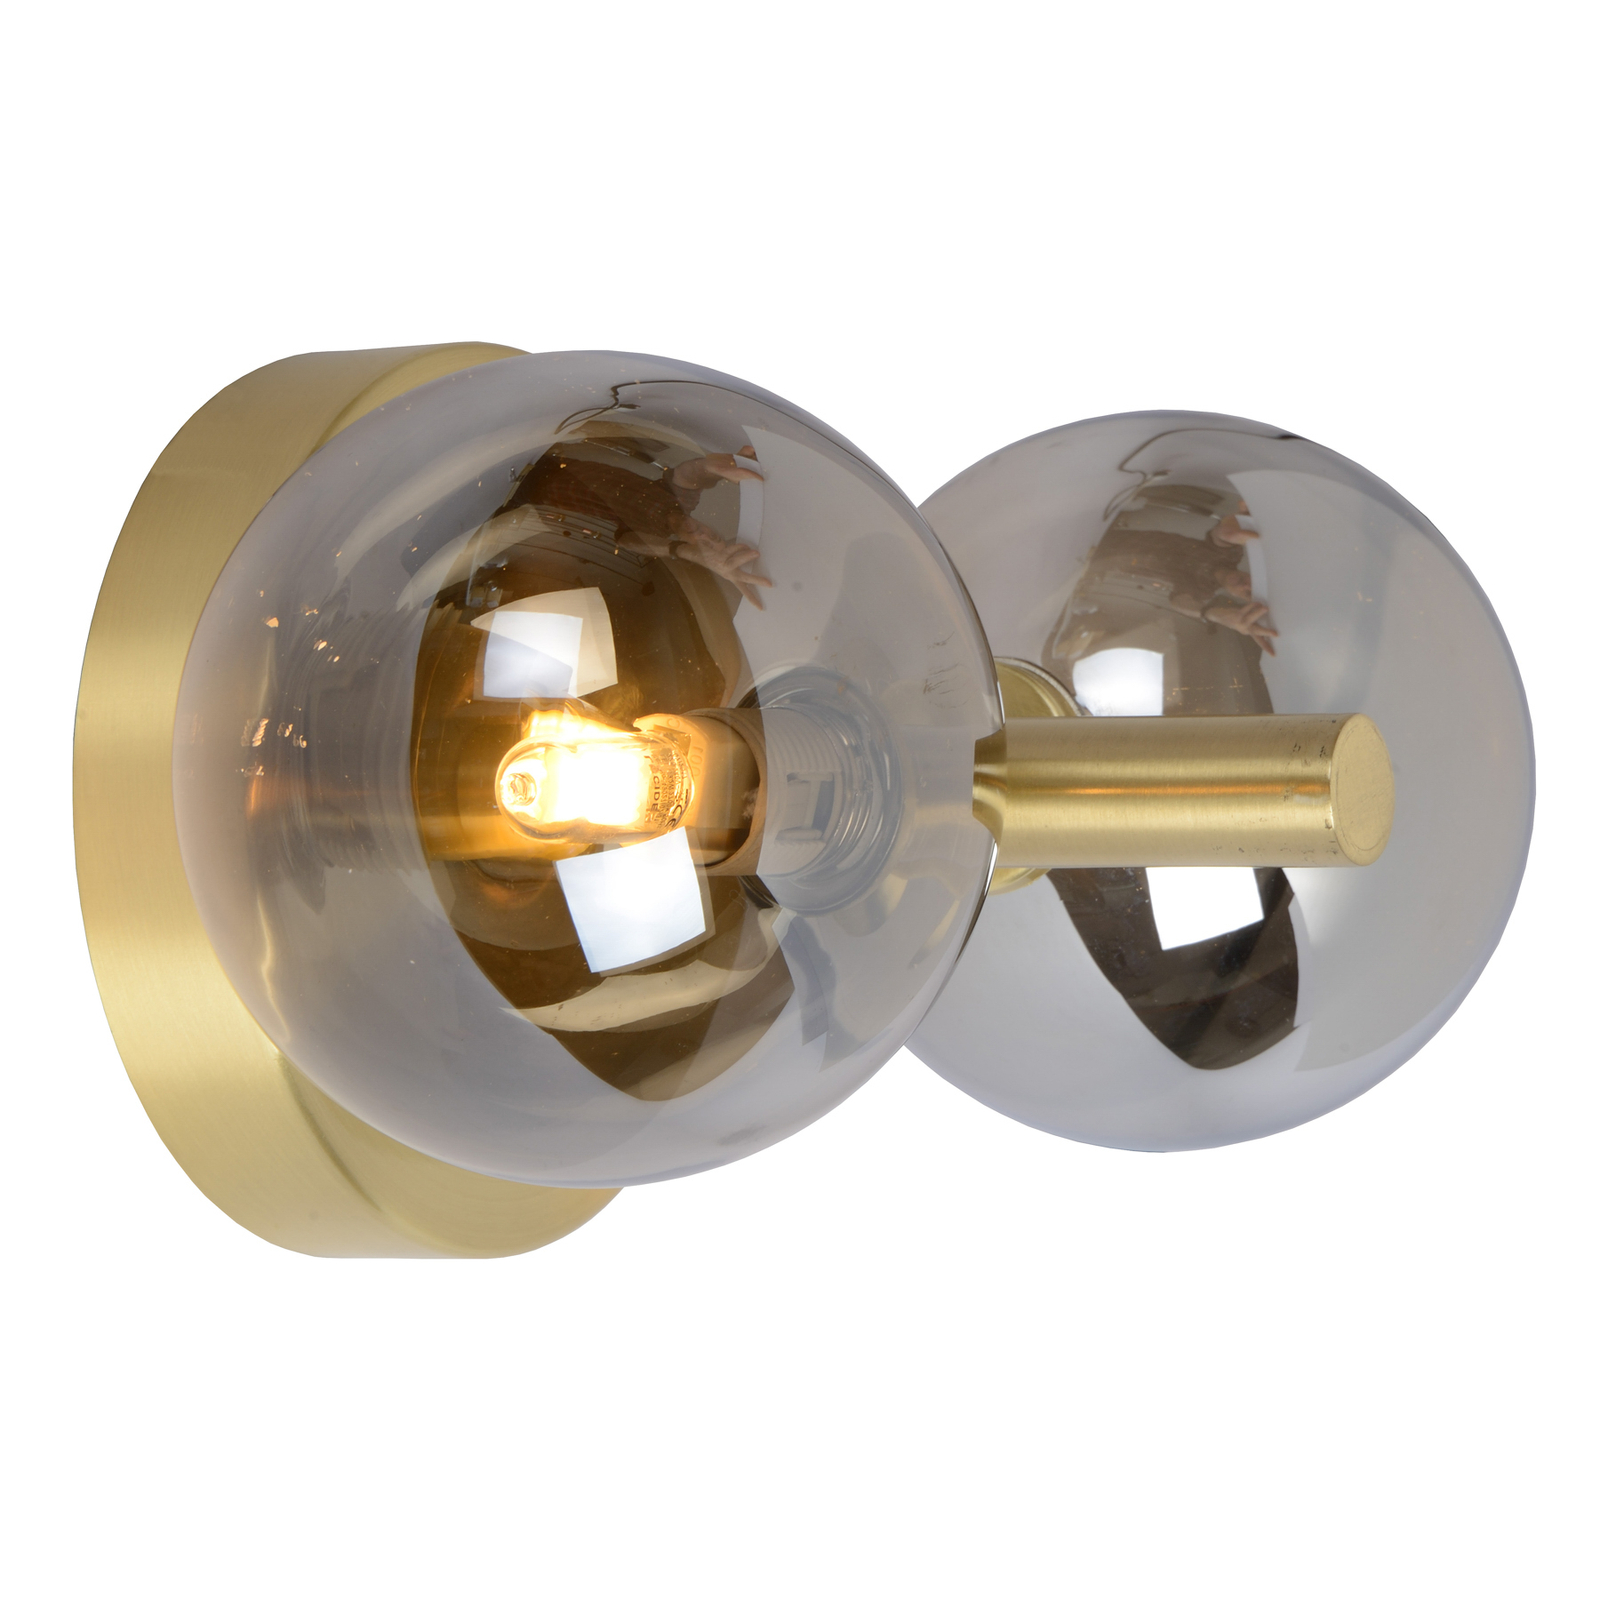 Vägglampa Tycho, 2 lampor, guld/rökgrå